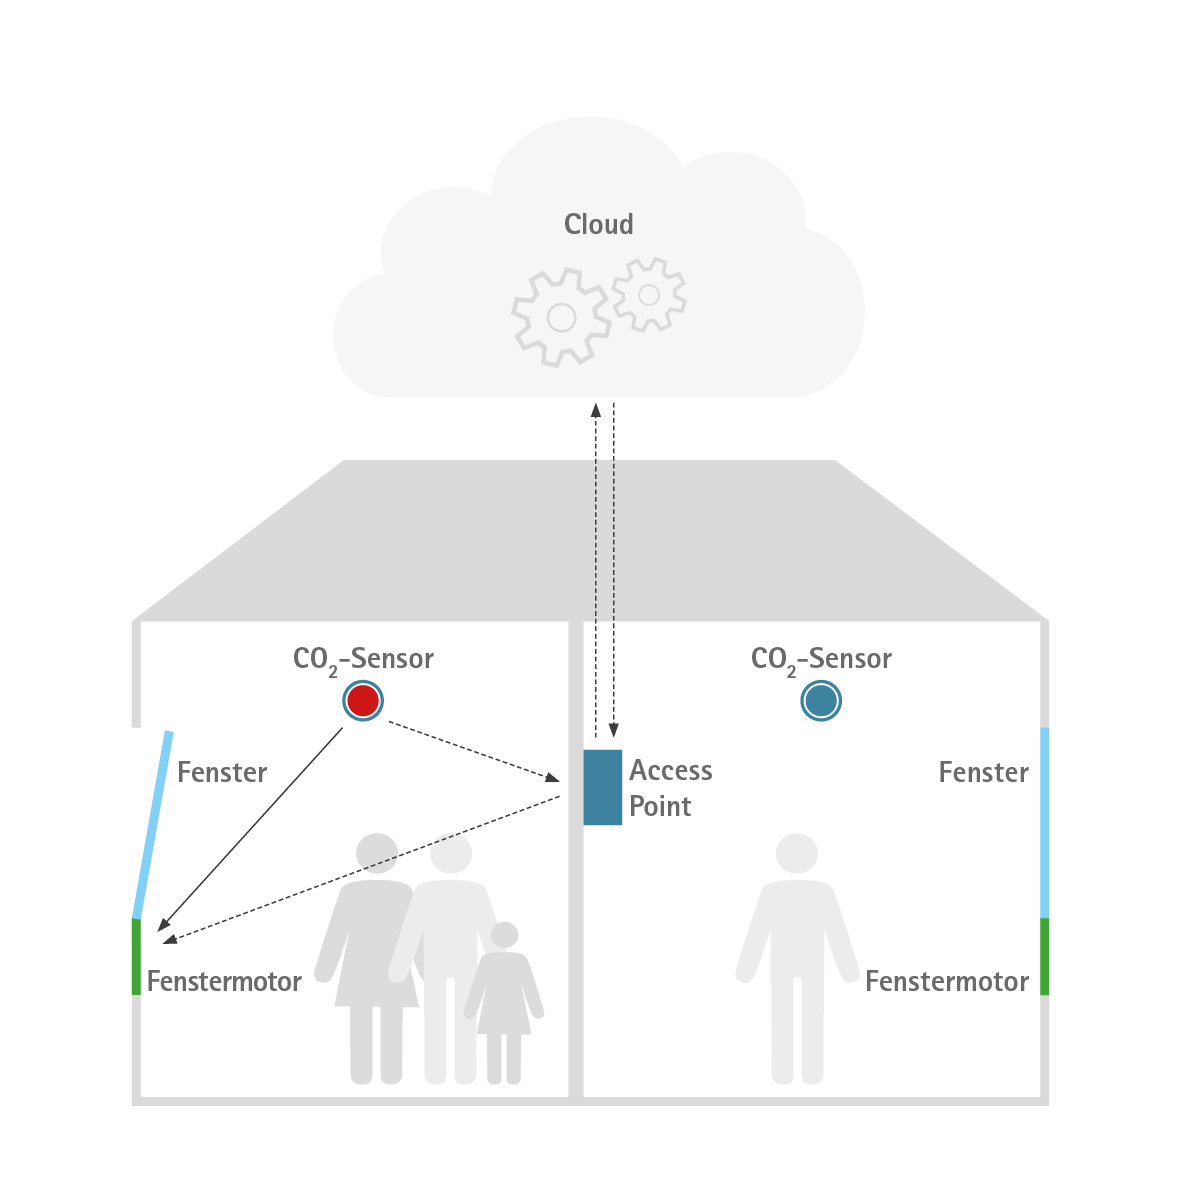 Einfaches Beispiel mit a) direkter Kommunikation zwischen CO2-Sensor und Fenstermotor und b) Signalfluss über Access Point und Cloud